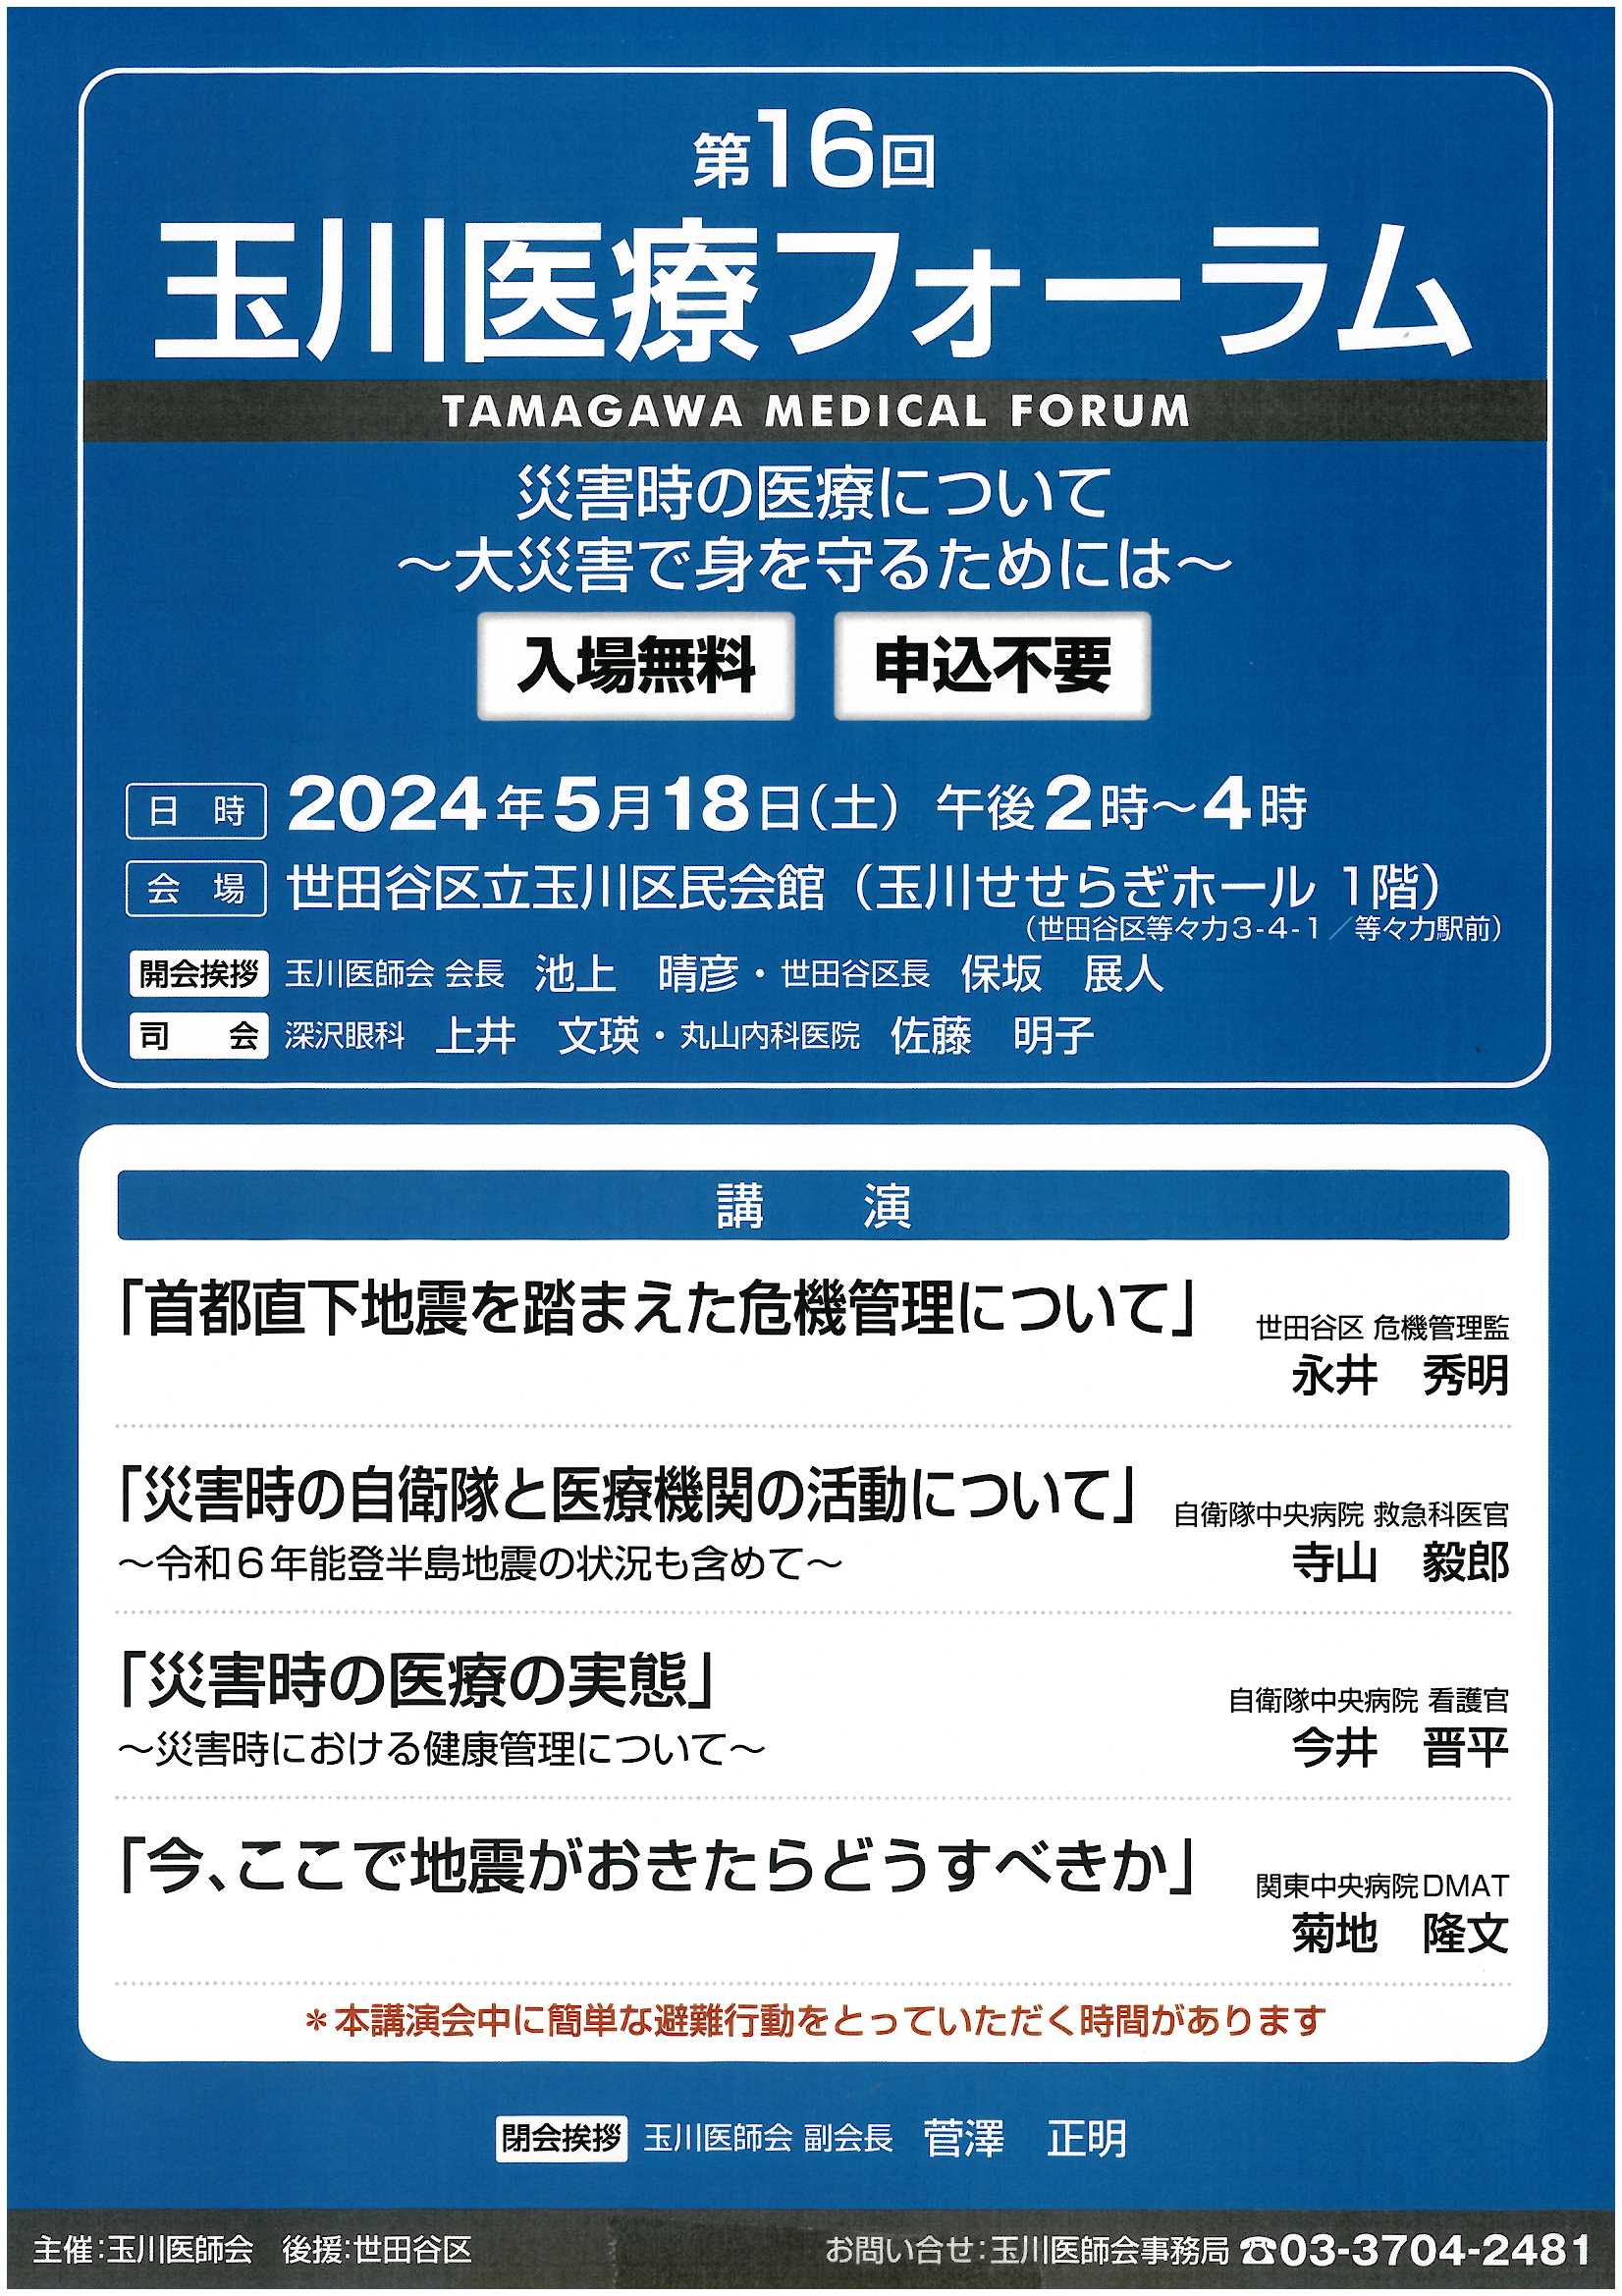 【5/18】玉川医療フォーラムにて関東中央病院DMATの菊地医師が講演します。